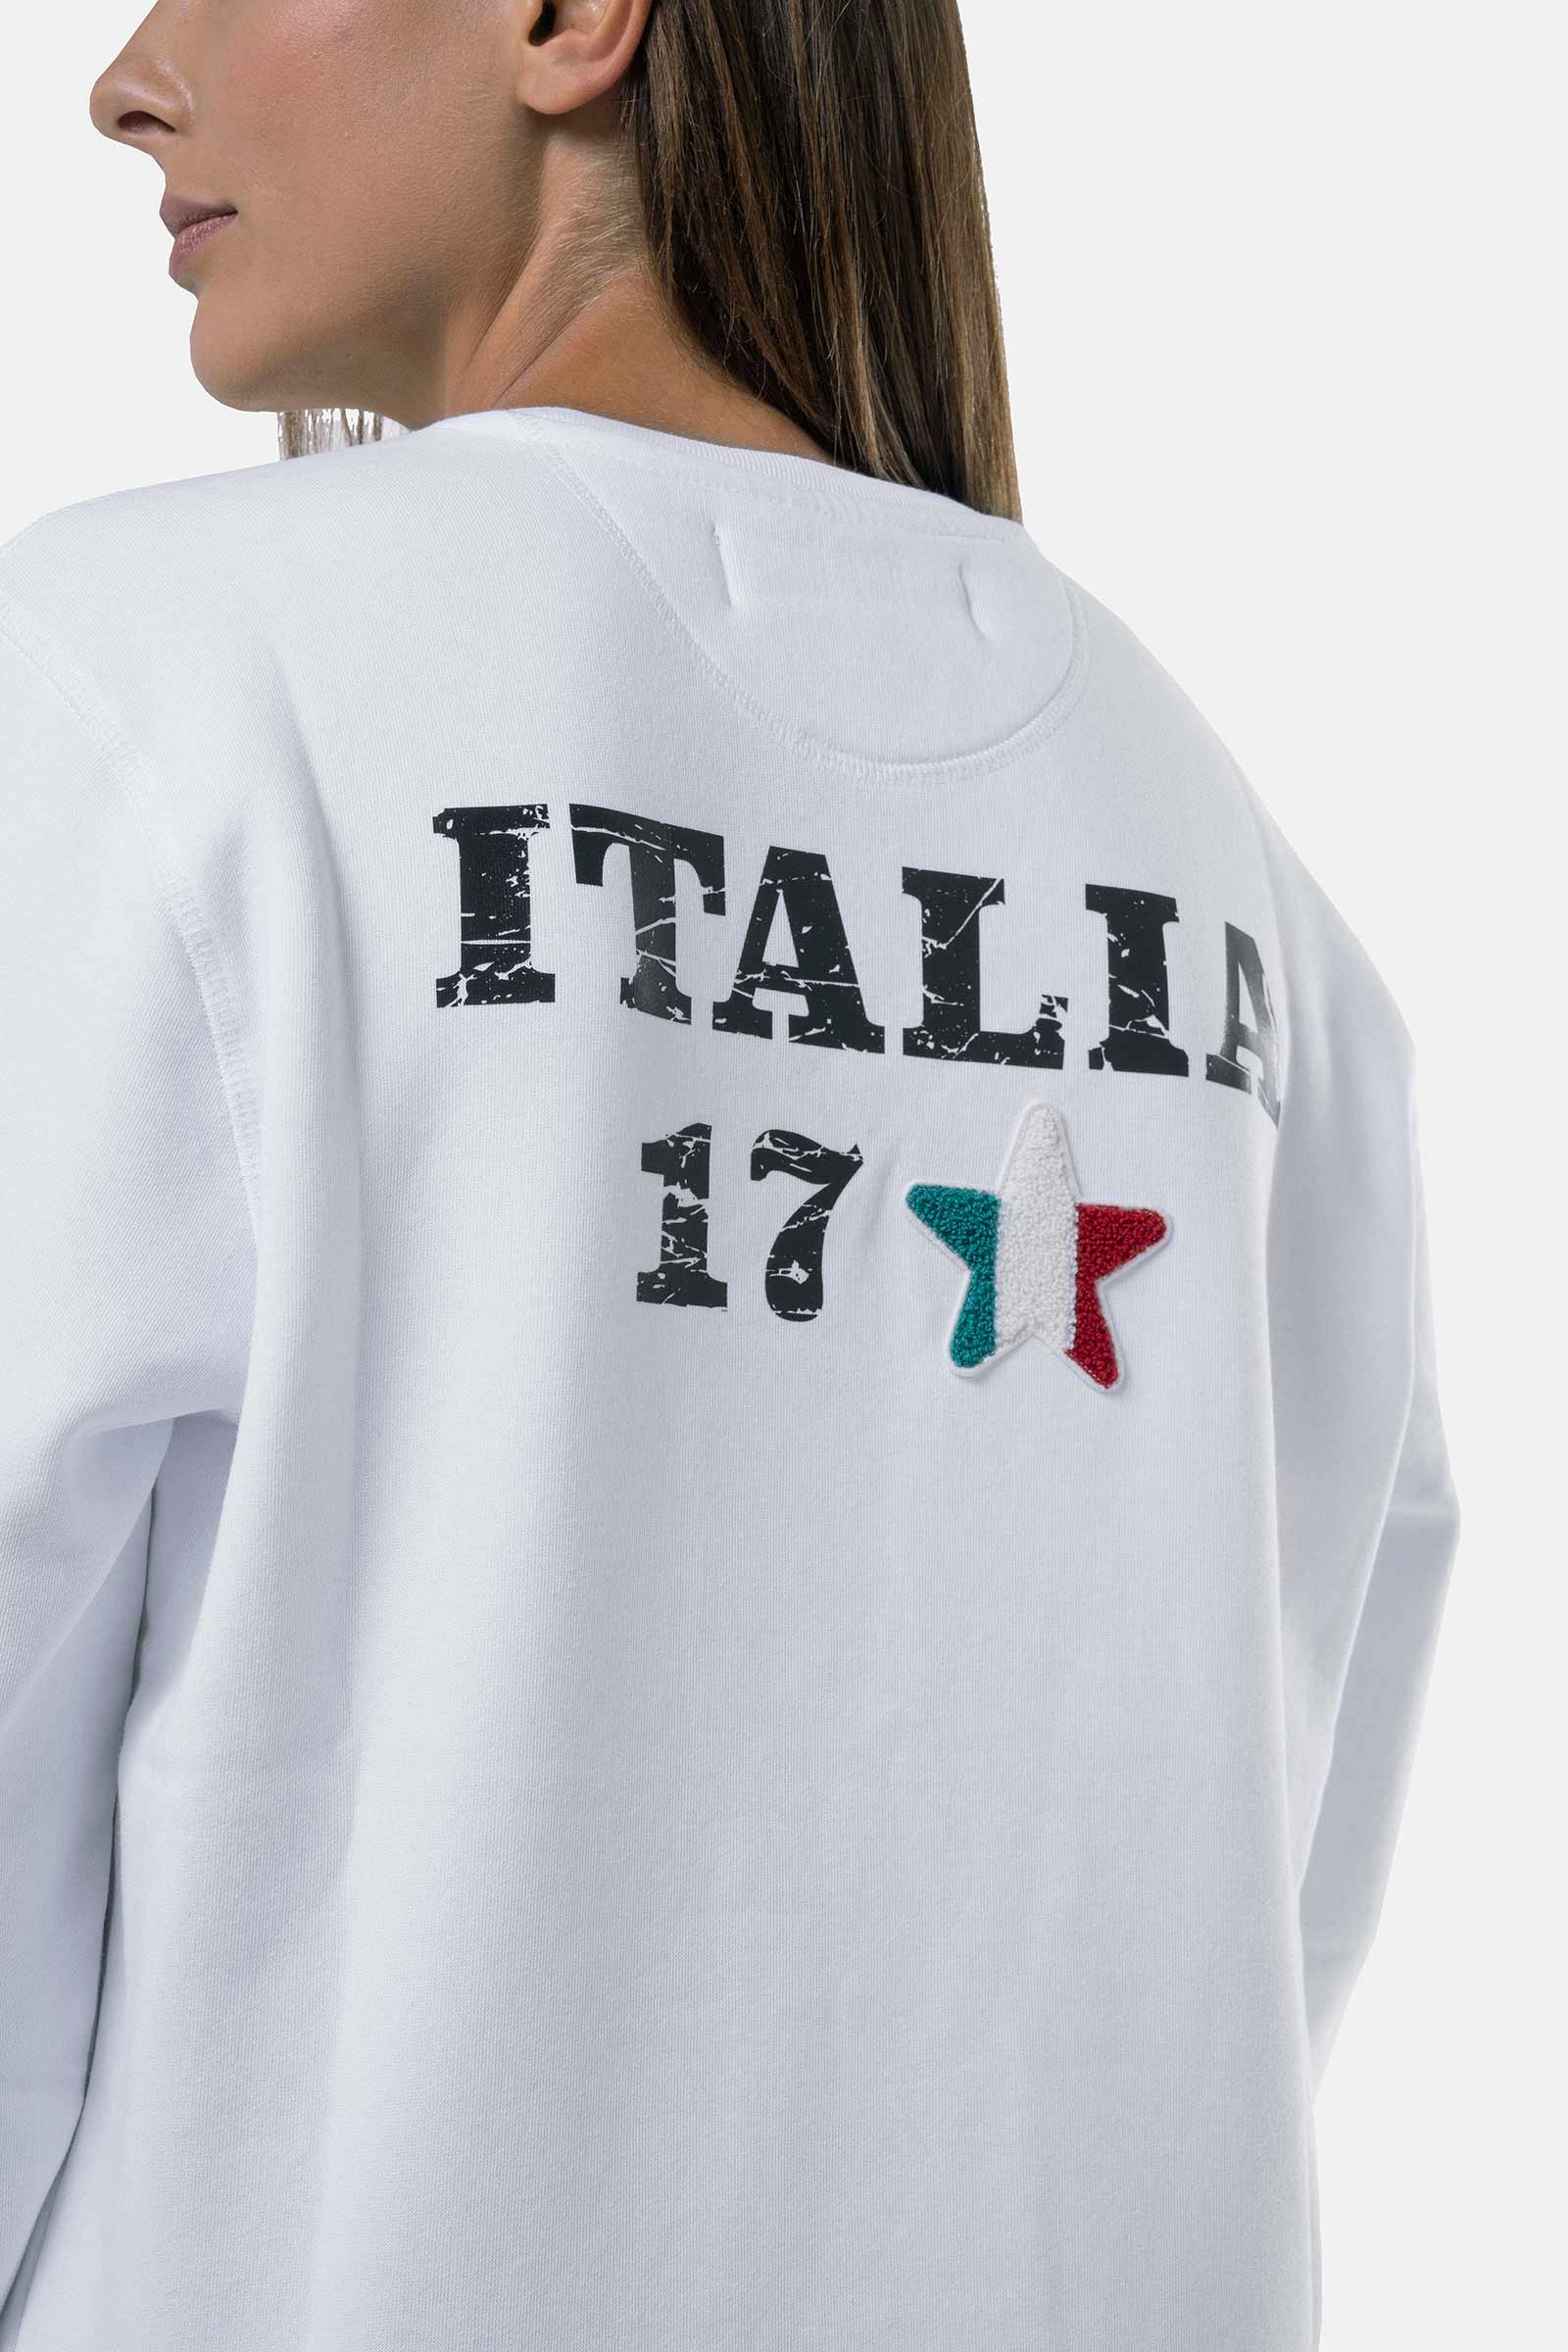 ITALIA 17 SWEATSHIRT - WHITE - Hydrogen - Luxury Sportwear